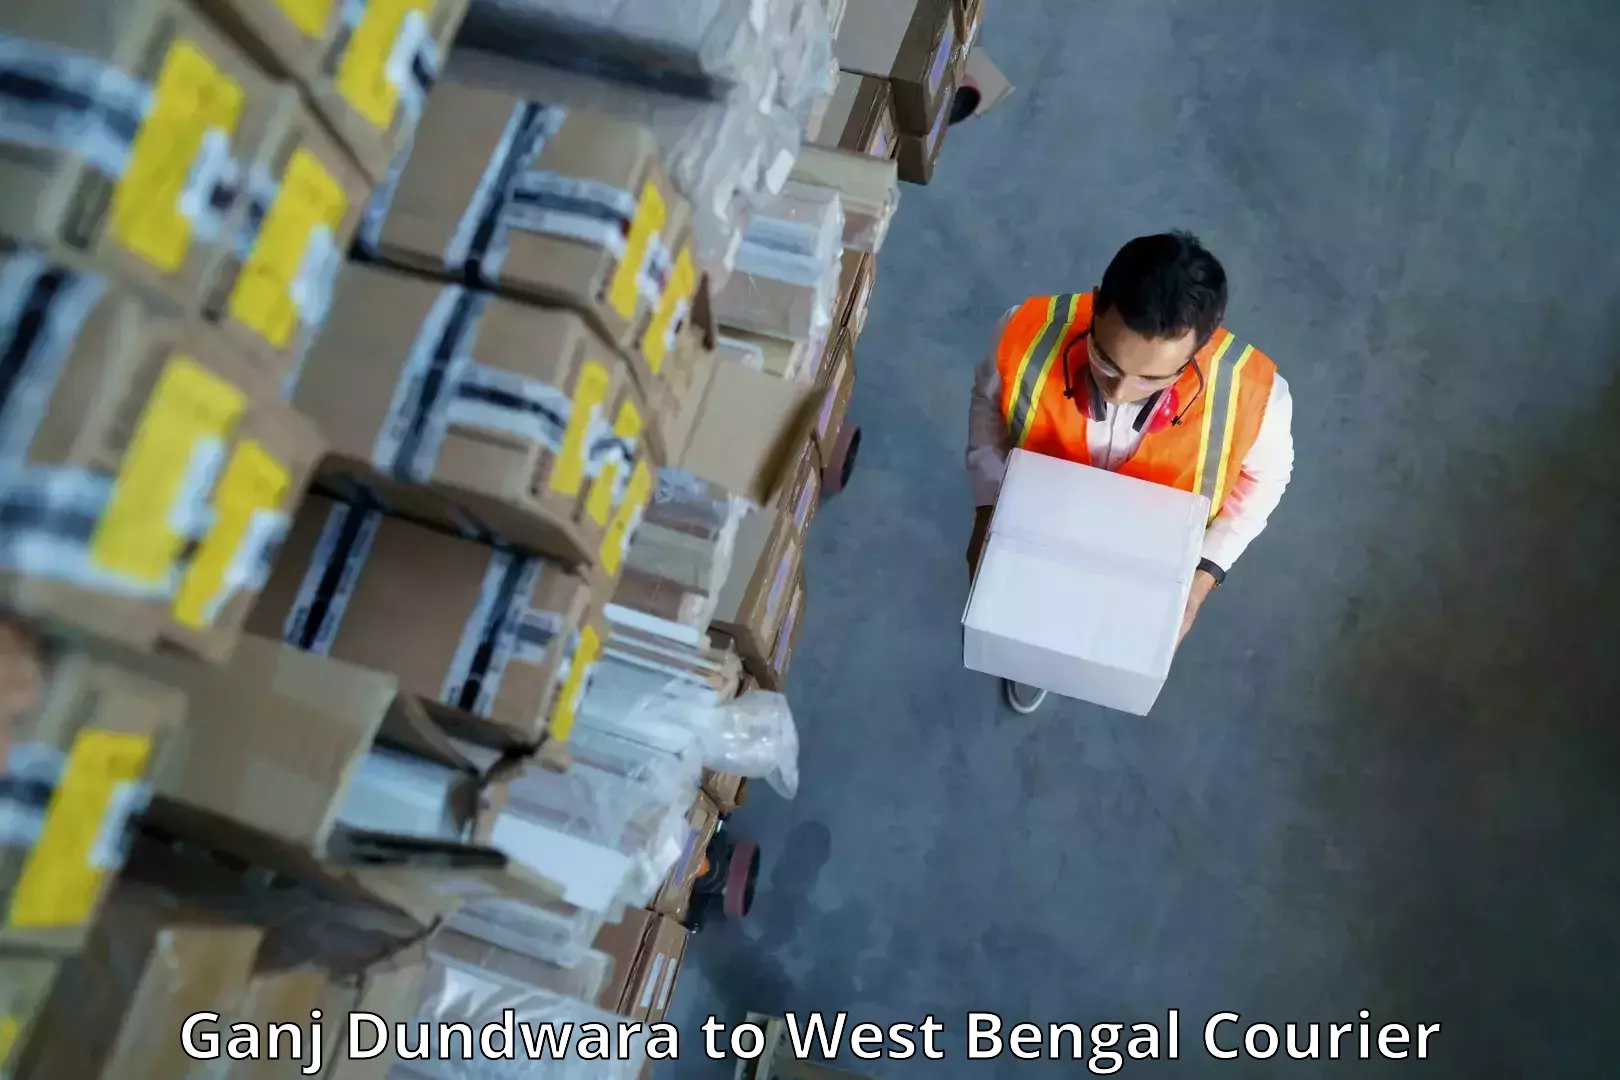 Professional courier handling Ganj Dundwara to Bagdogra